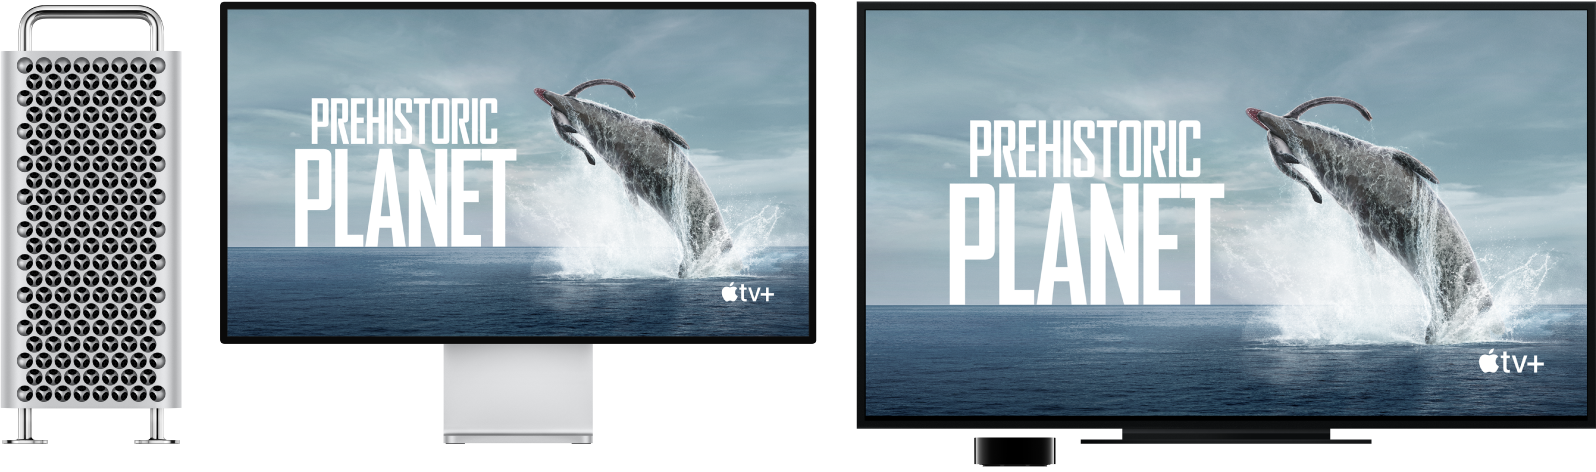 Um Mac Pro com o respetivo conteúdo projetado num televisor de alta definição de grandes dimensões utilizando uma Apple TV.